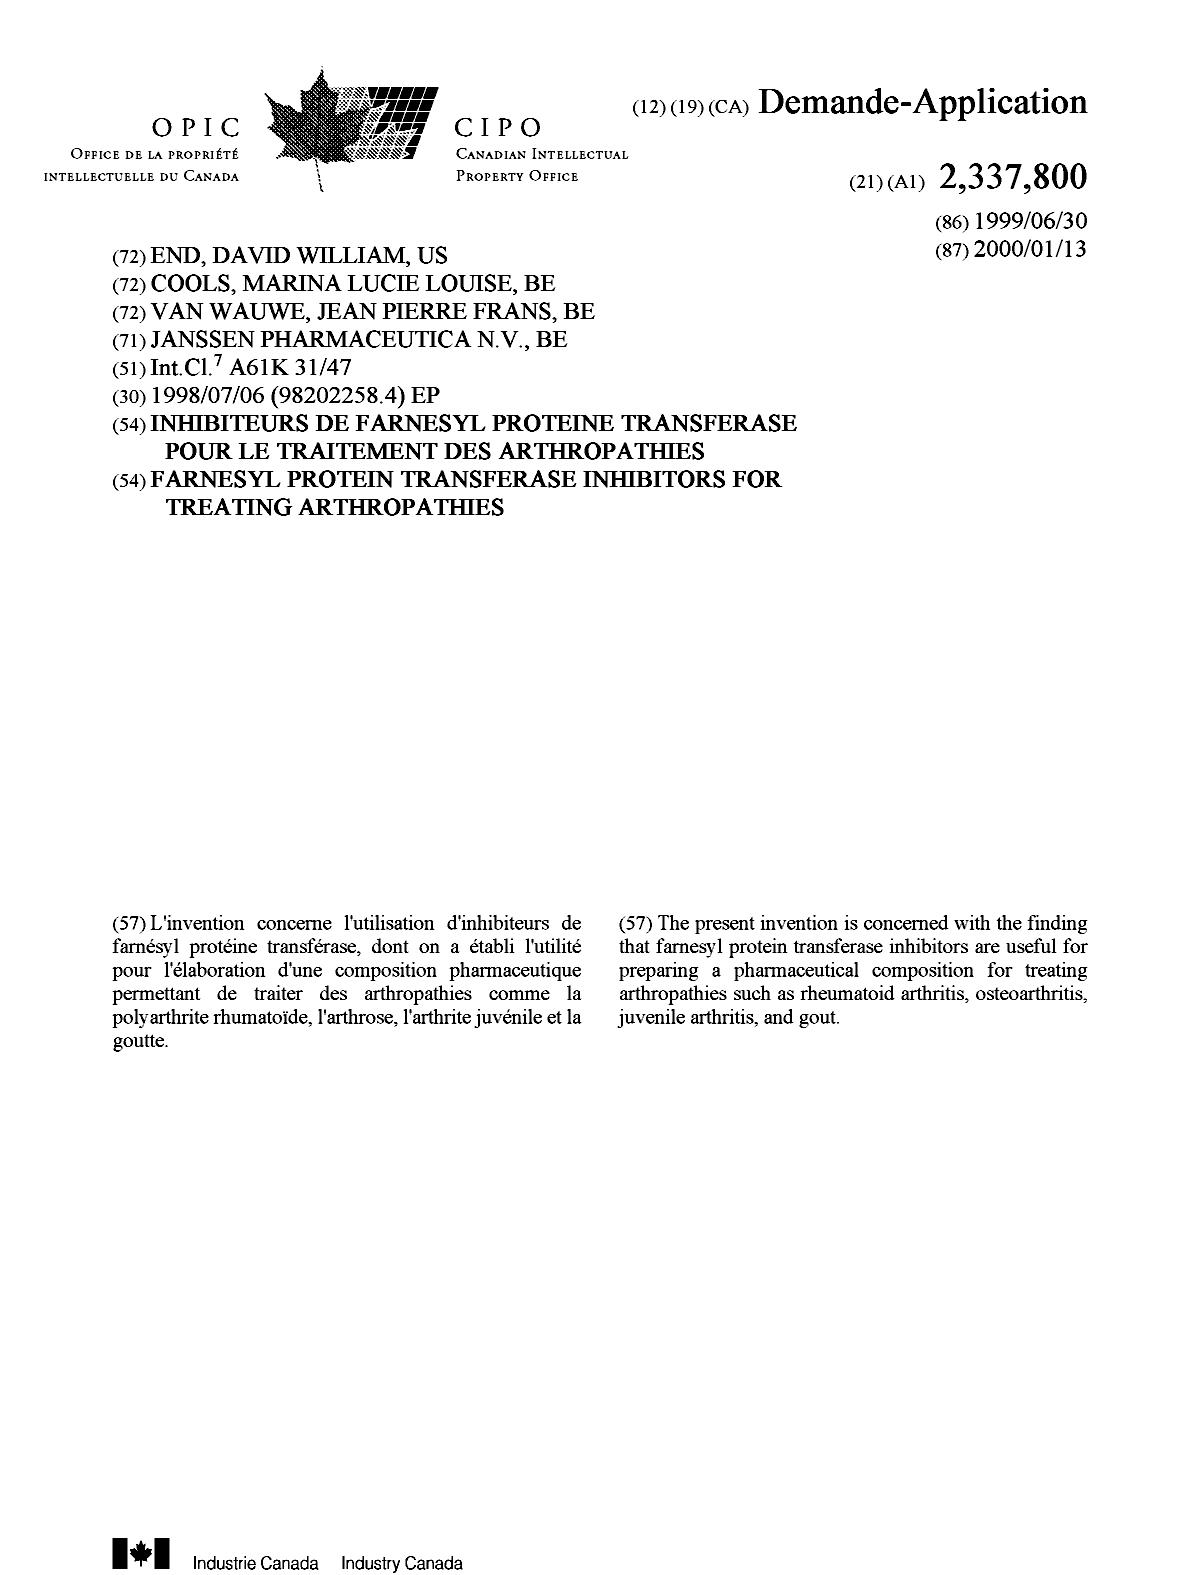 Document de brevet canadien 2337800. Page couverture 20010418. Image 1 de 1